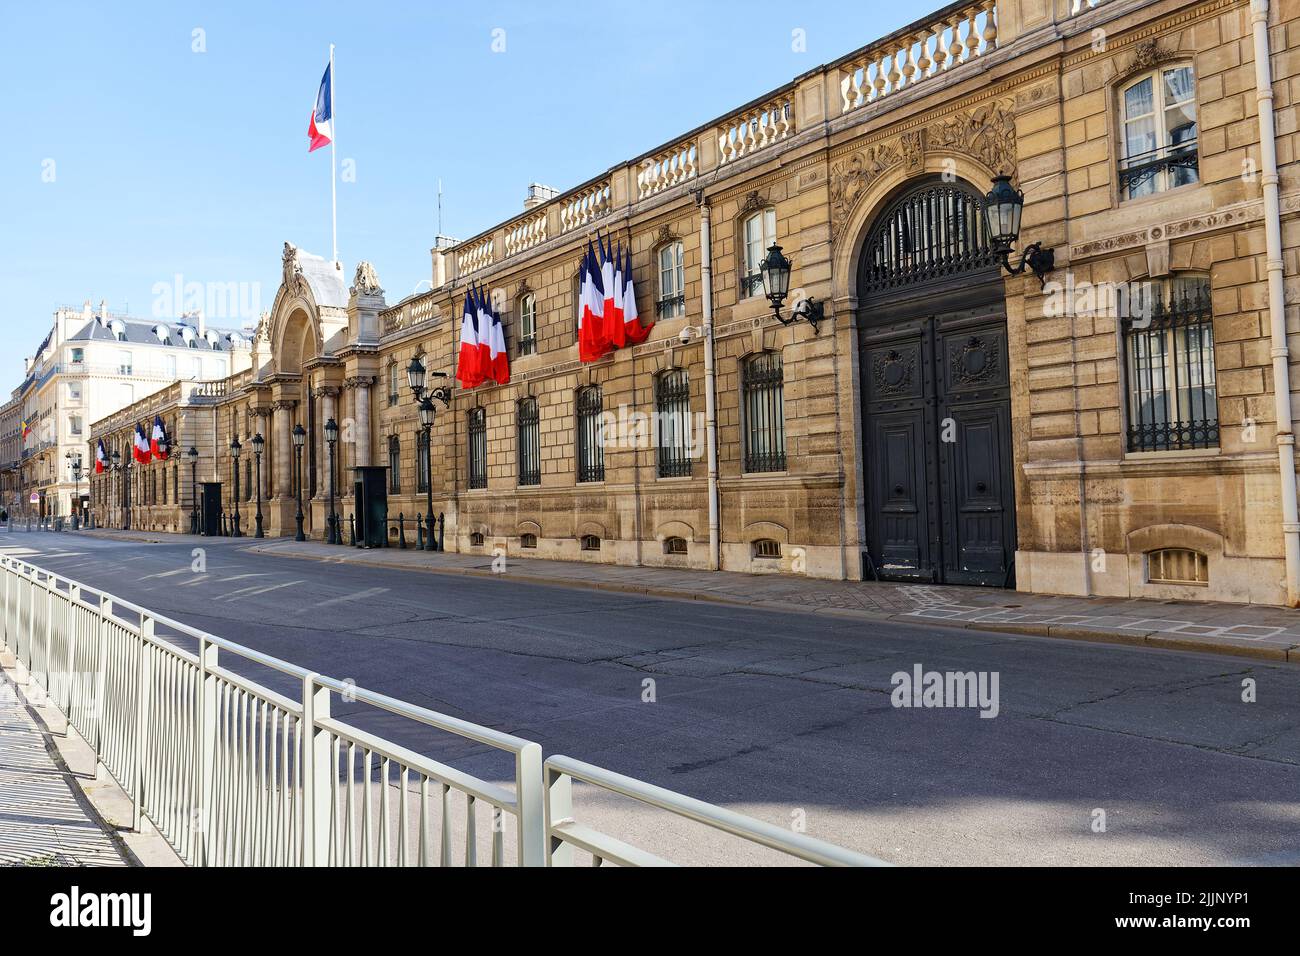 Vista de la puerta de entrada del Palacio del Elíseo decorado con banderas nacionales. Elysee Palace - residencia oficial del Presidente de la República Francesa desde entonces Foto de stock